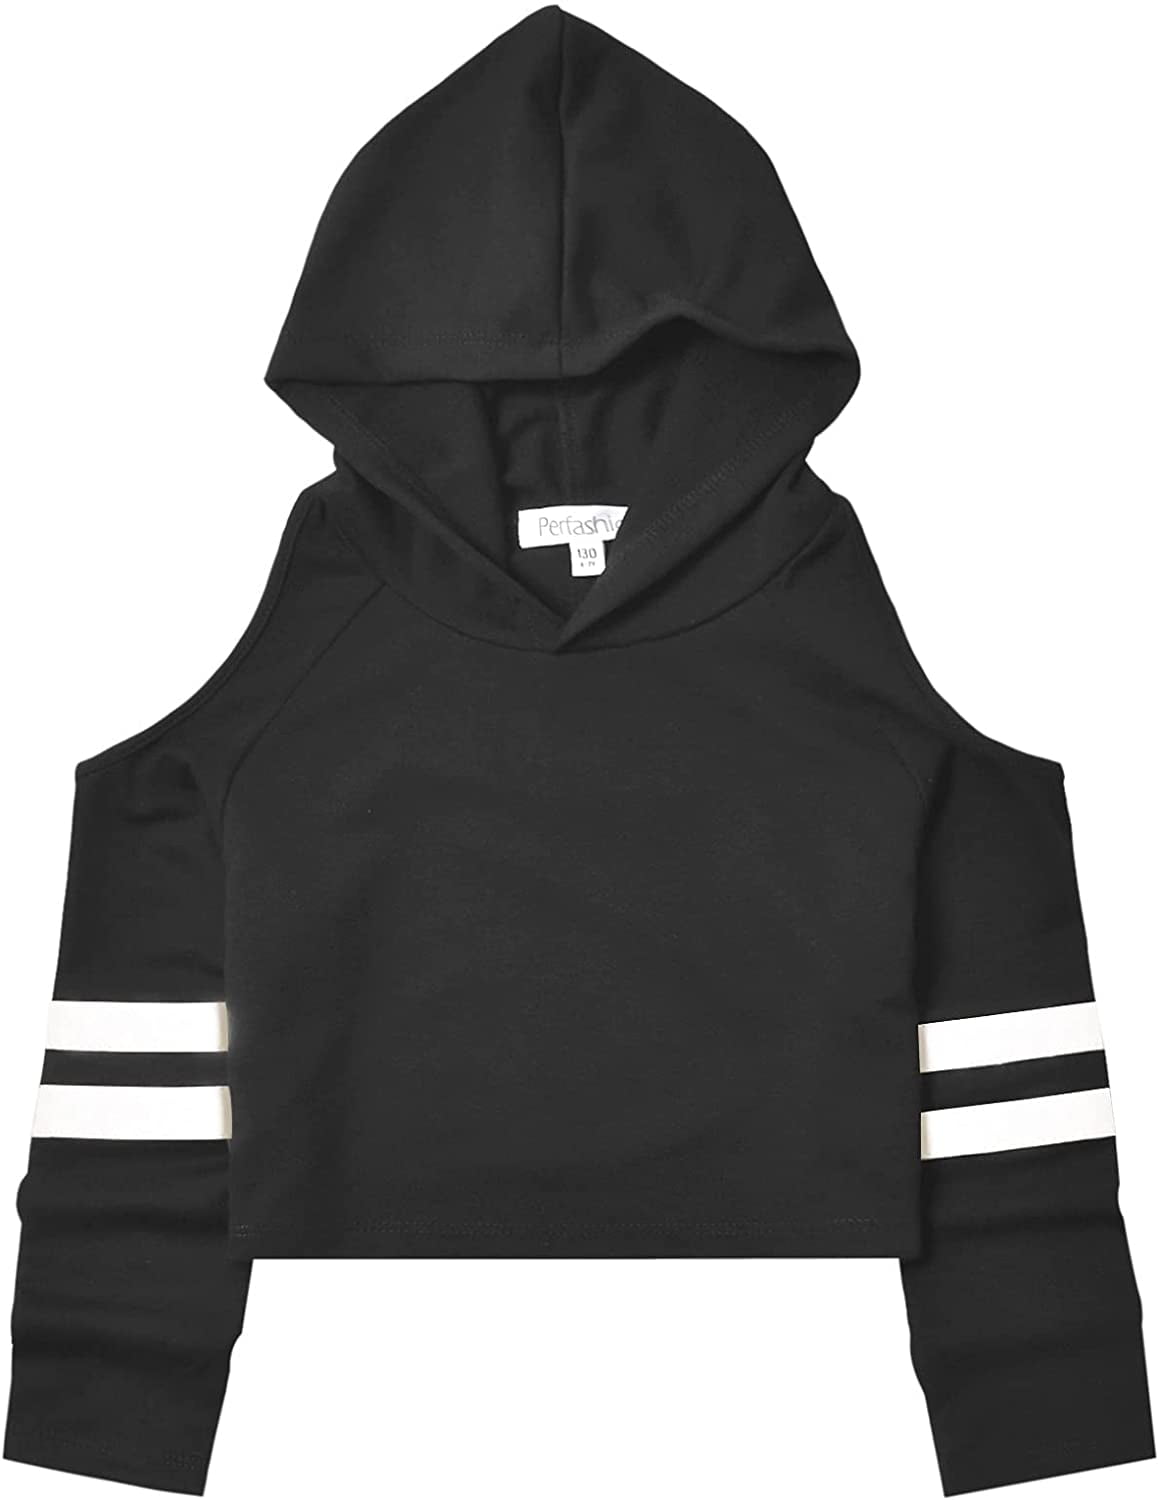 Men's Women black white stripe 3D Print Sweatshirt Hoodie Jacket Pullover Tops Y